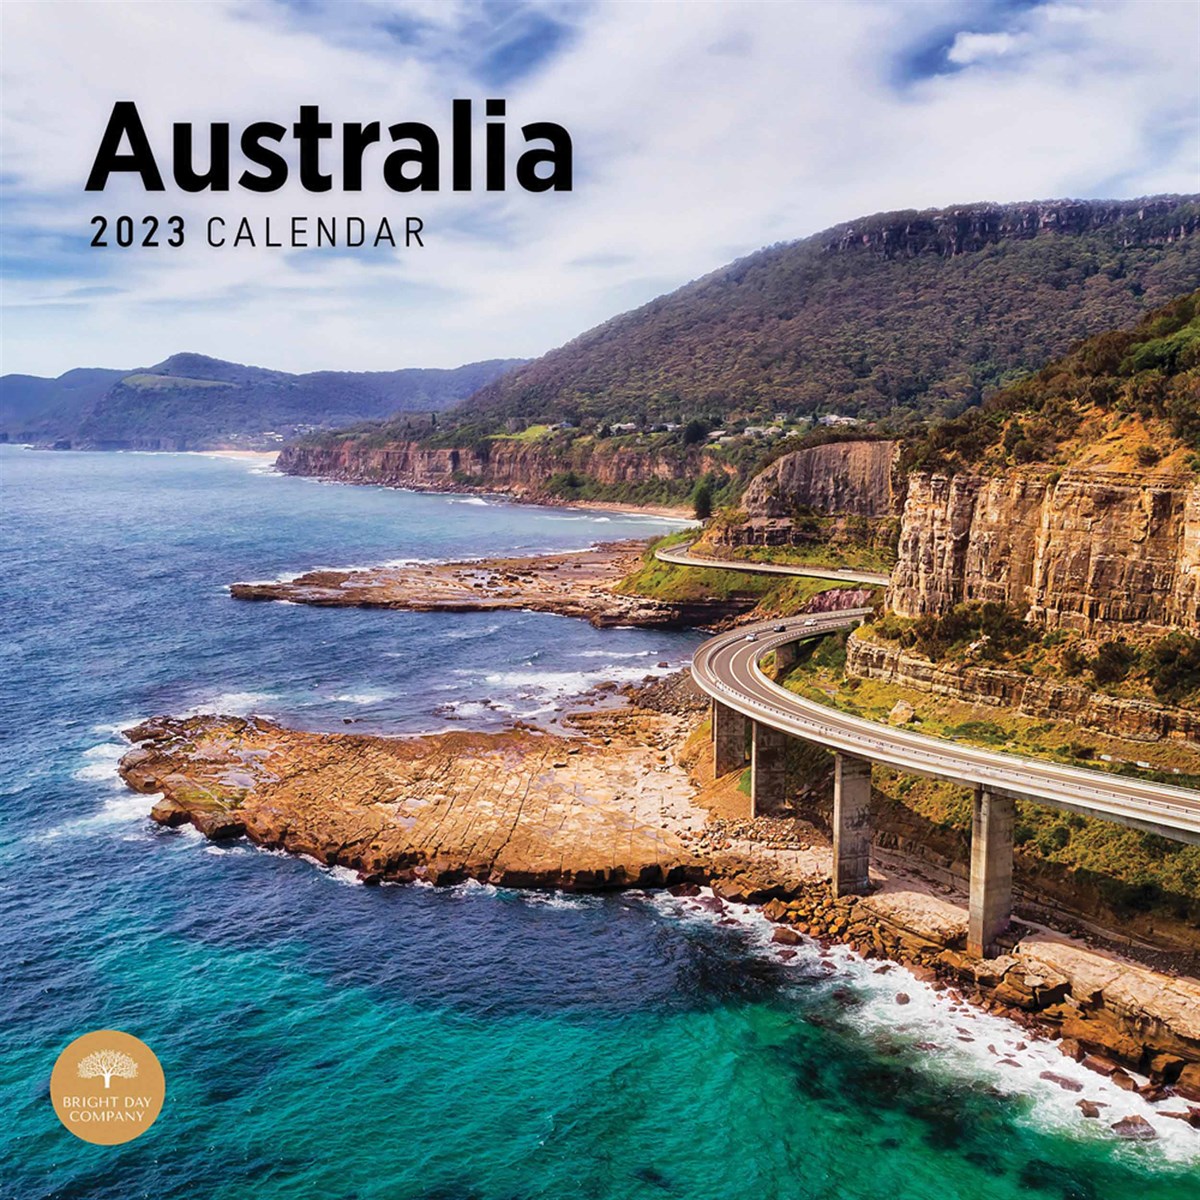 Australia 2023 Calendars